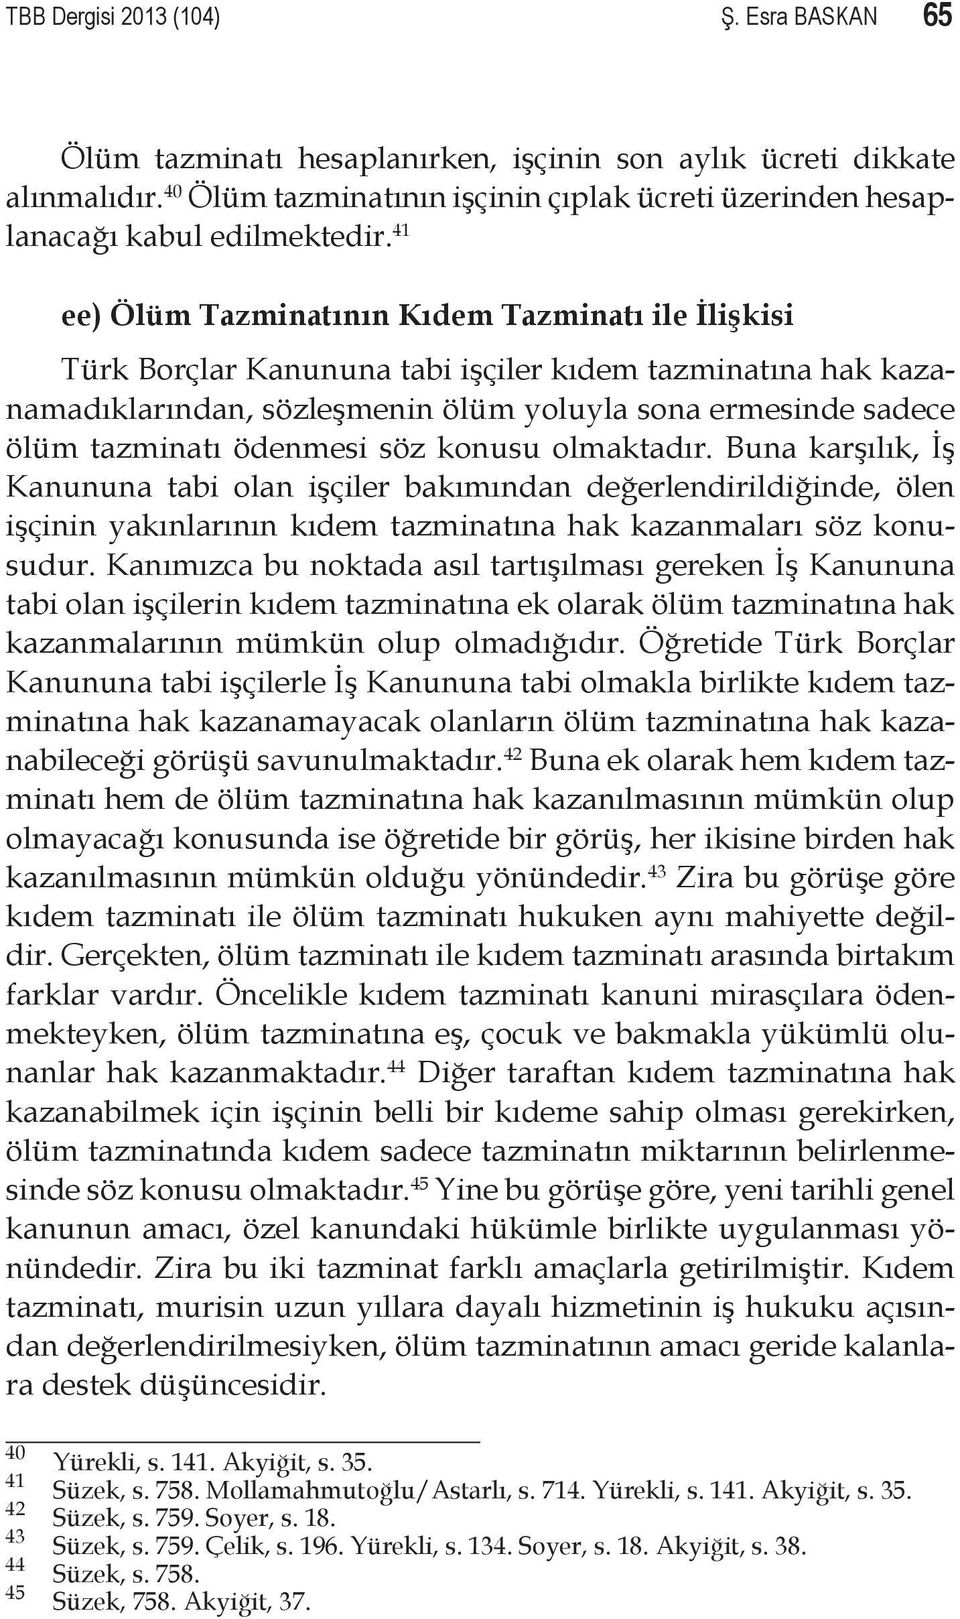 41 ee) Ölüm Tazminatının Kıdem Tazminatı ile İlişkisi Türk Borçlar Kanununa tabi işçiler kıdem tazminatına hak kazanamadıklarından, sözleşmenin ölüm yoluyla sona ermesinde sadece ölüm tazminatı